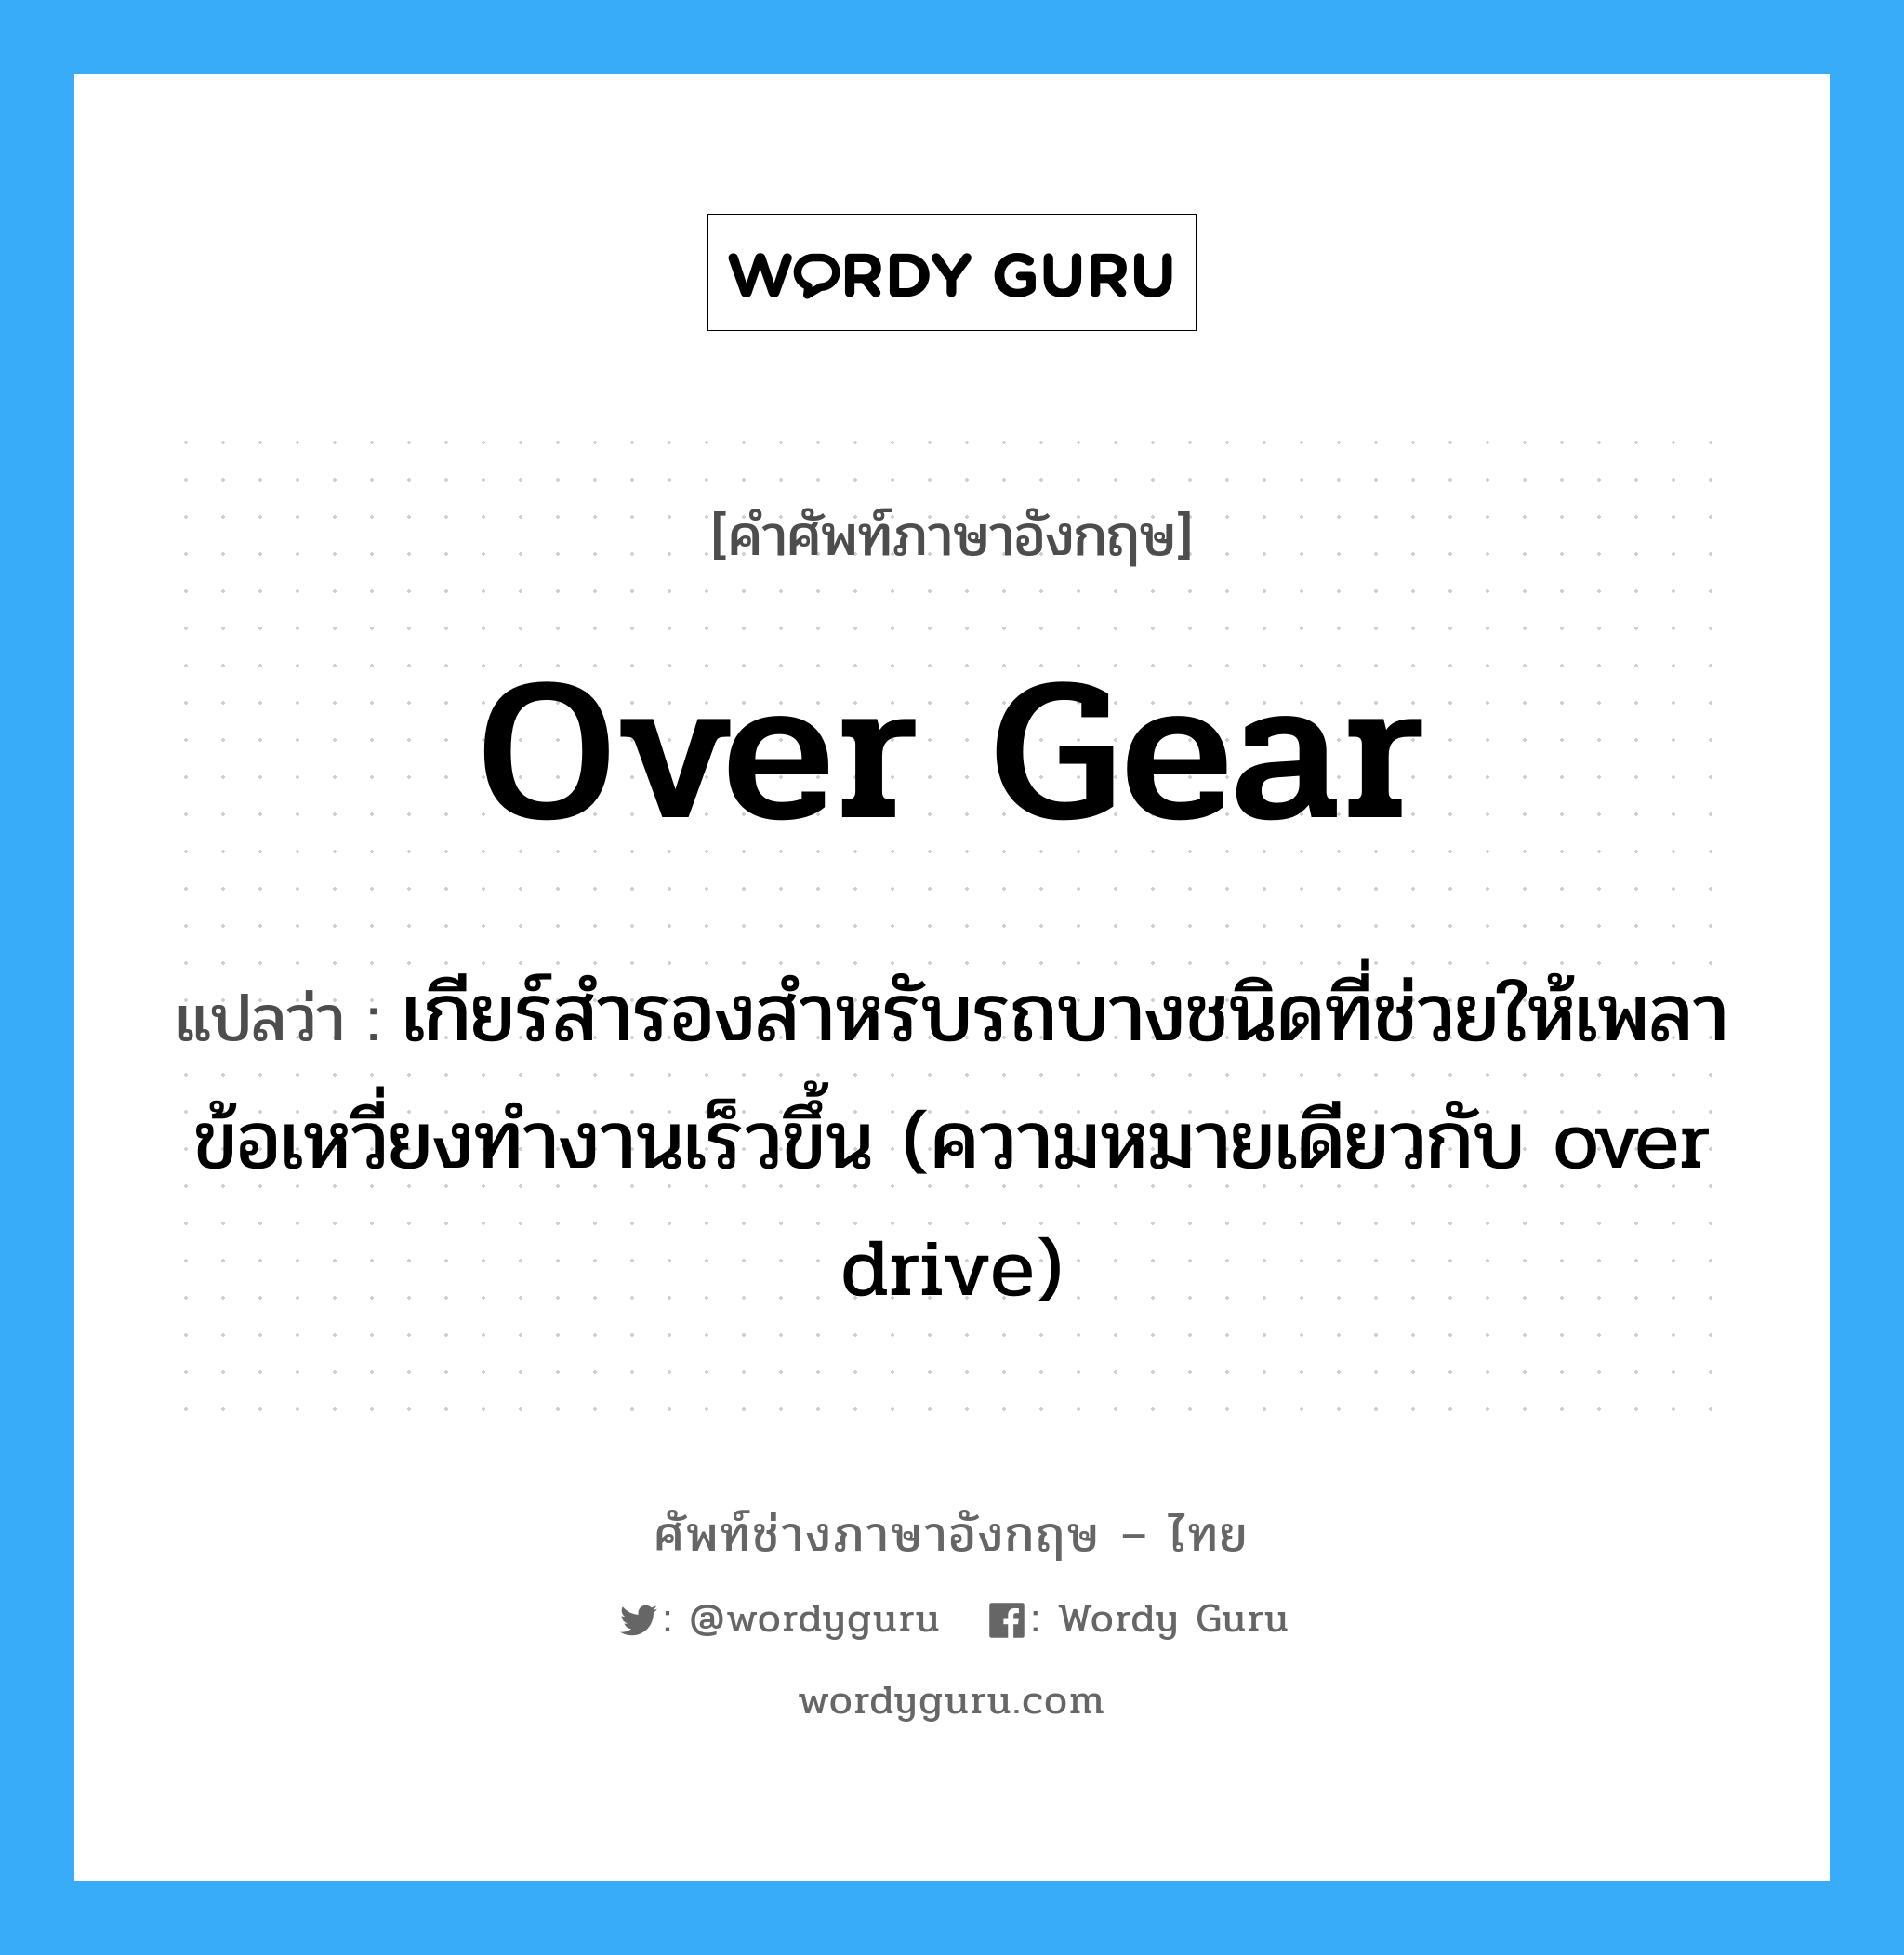 over gear แปลว่า?, คำศัพท์ช่างภาษาอังกฤษ - ไทย over gear คำศัพท์ภาษาอังกฤษ over gear แปลว่า เกียร์สำรองสำหรับรถบางชนิดที่ช่วยให้เพลาข้อเหวี่ยงทำงานเร็วขึ้น (ความหมายเดียวกับ over drive)